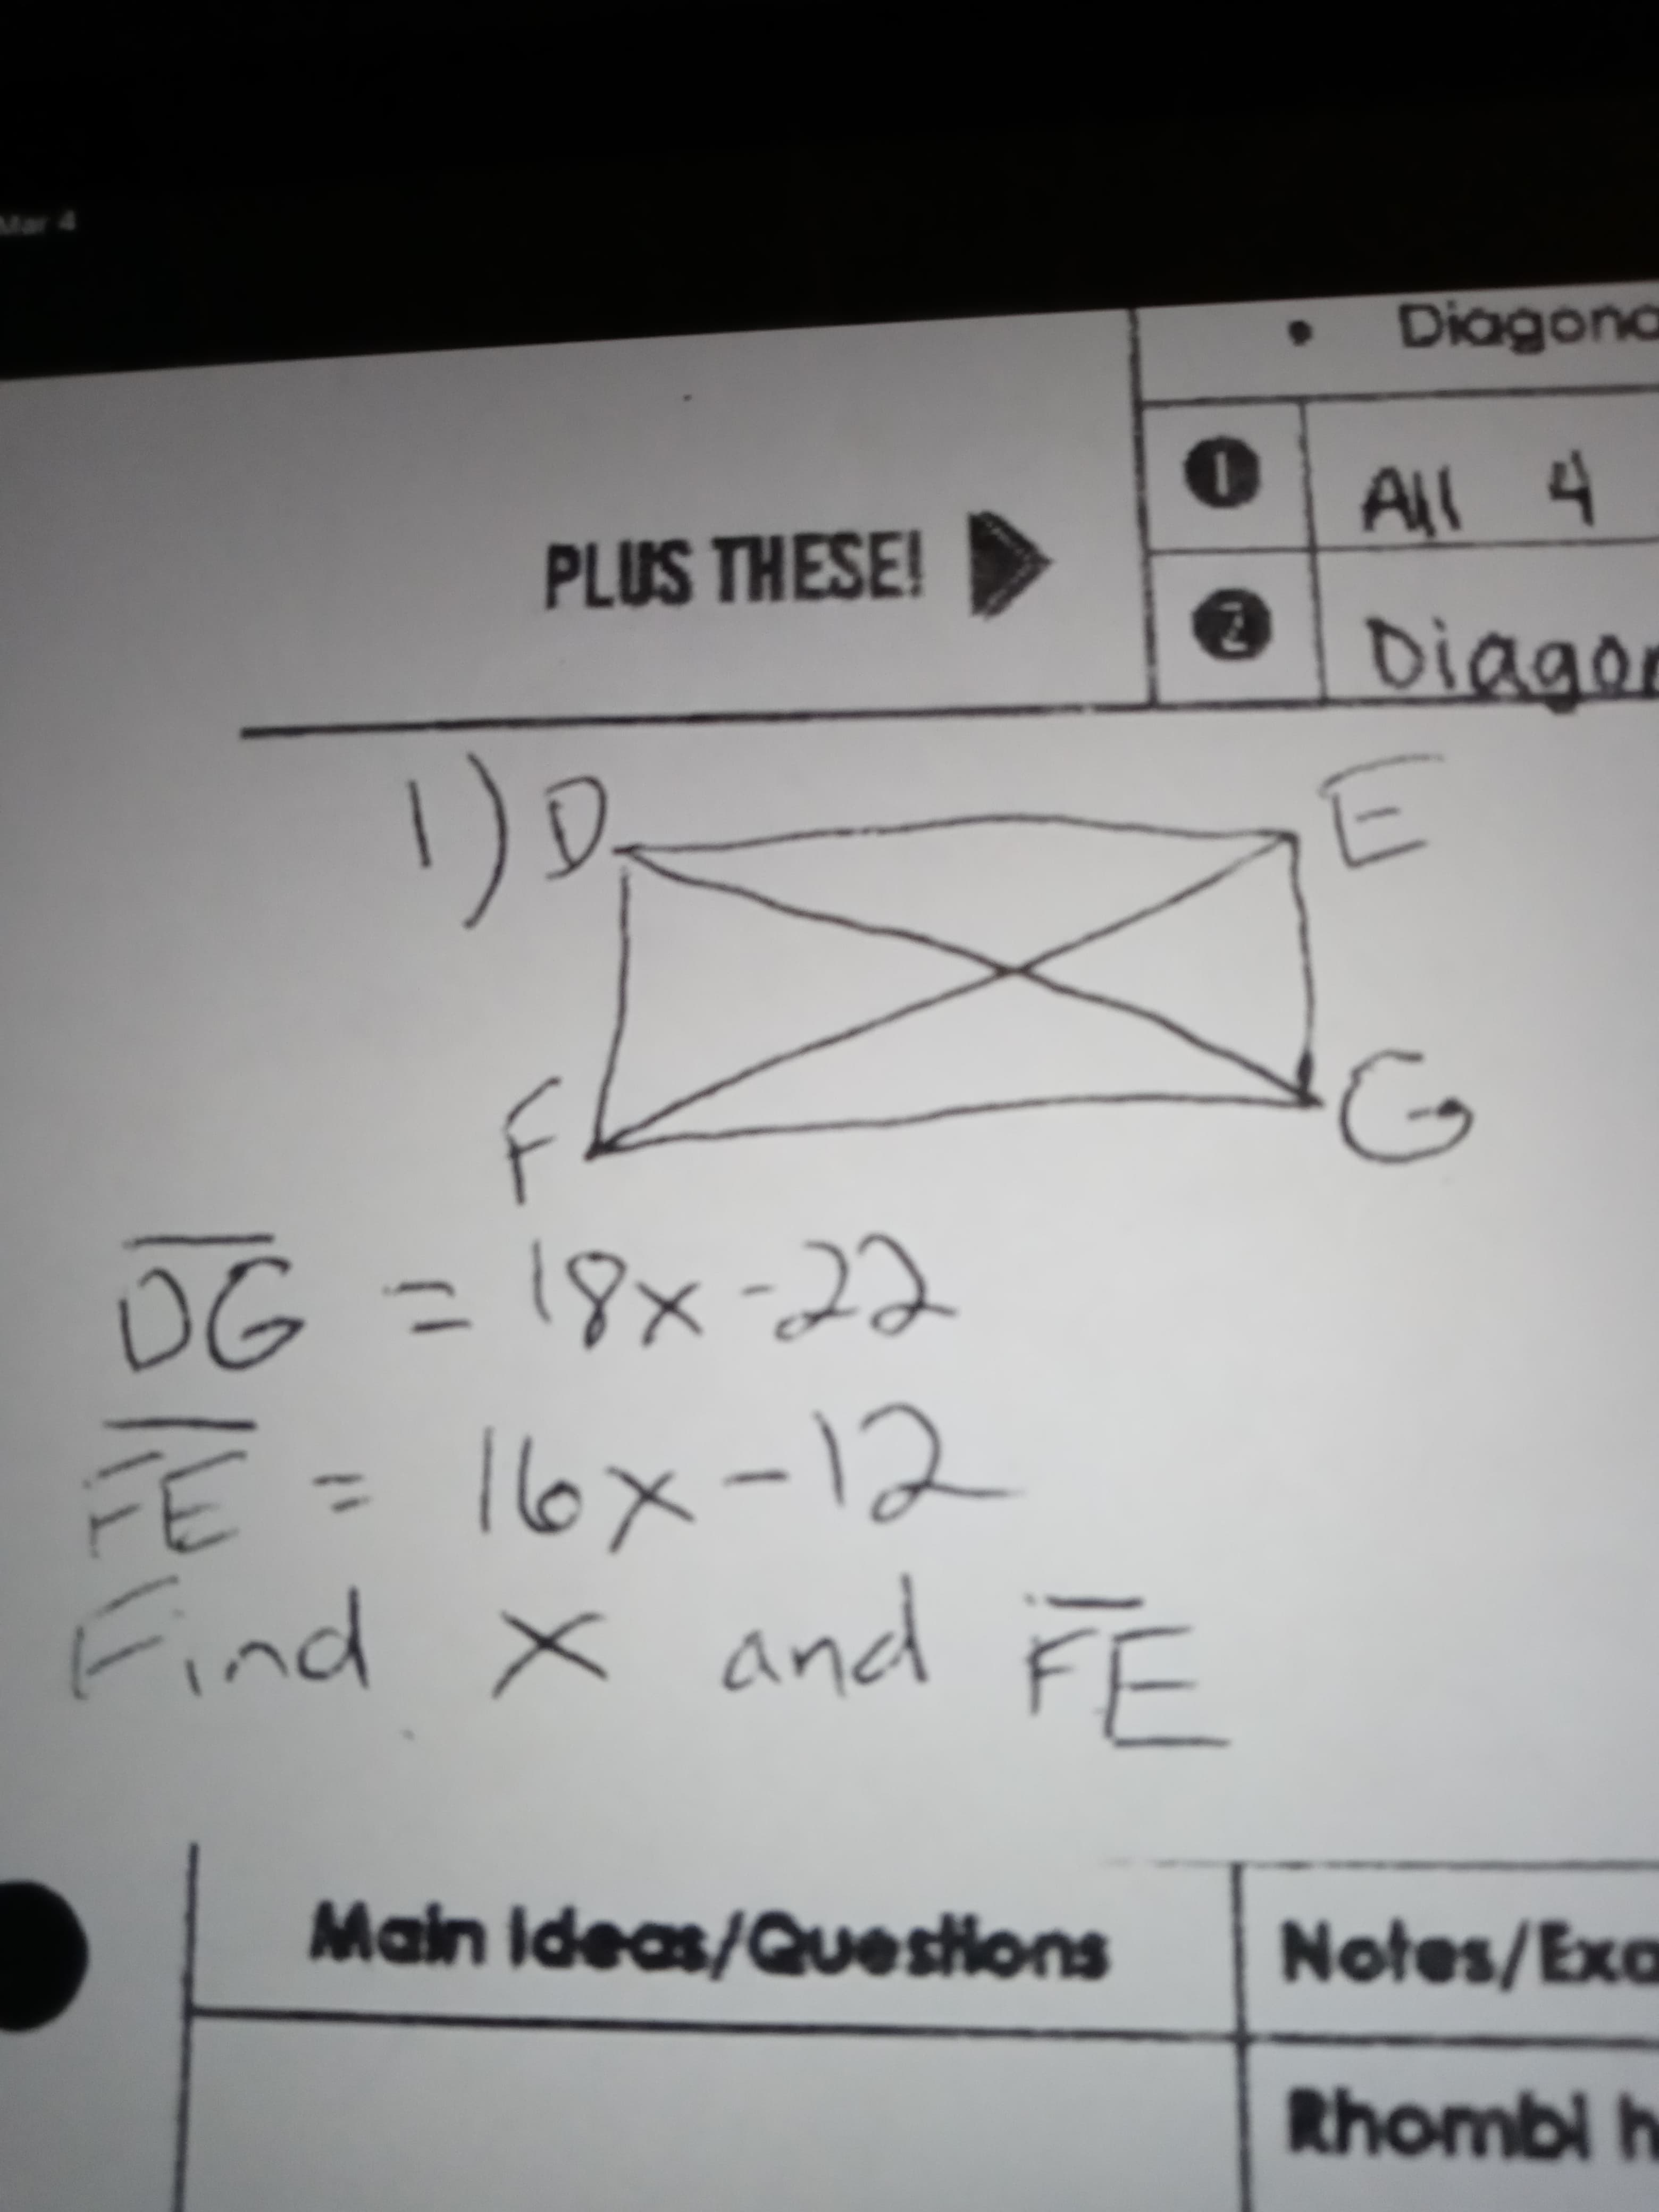 1)
F
OG =18x-2
I6x-12
Find x and FF
%3D
%3D
